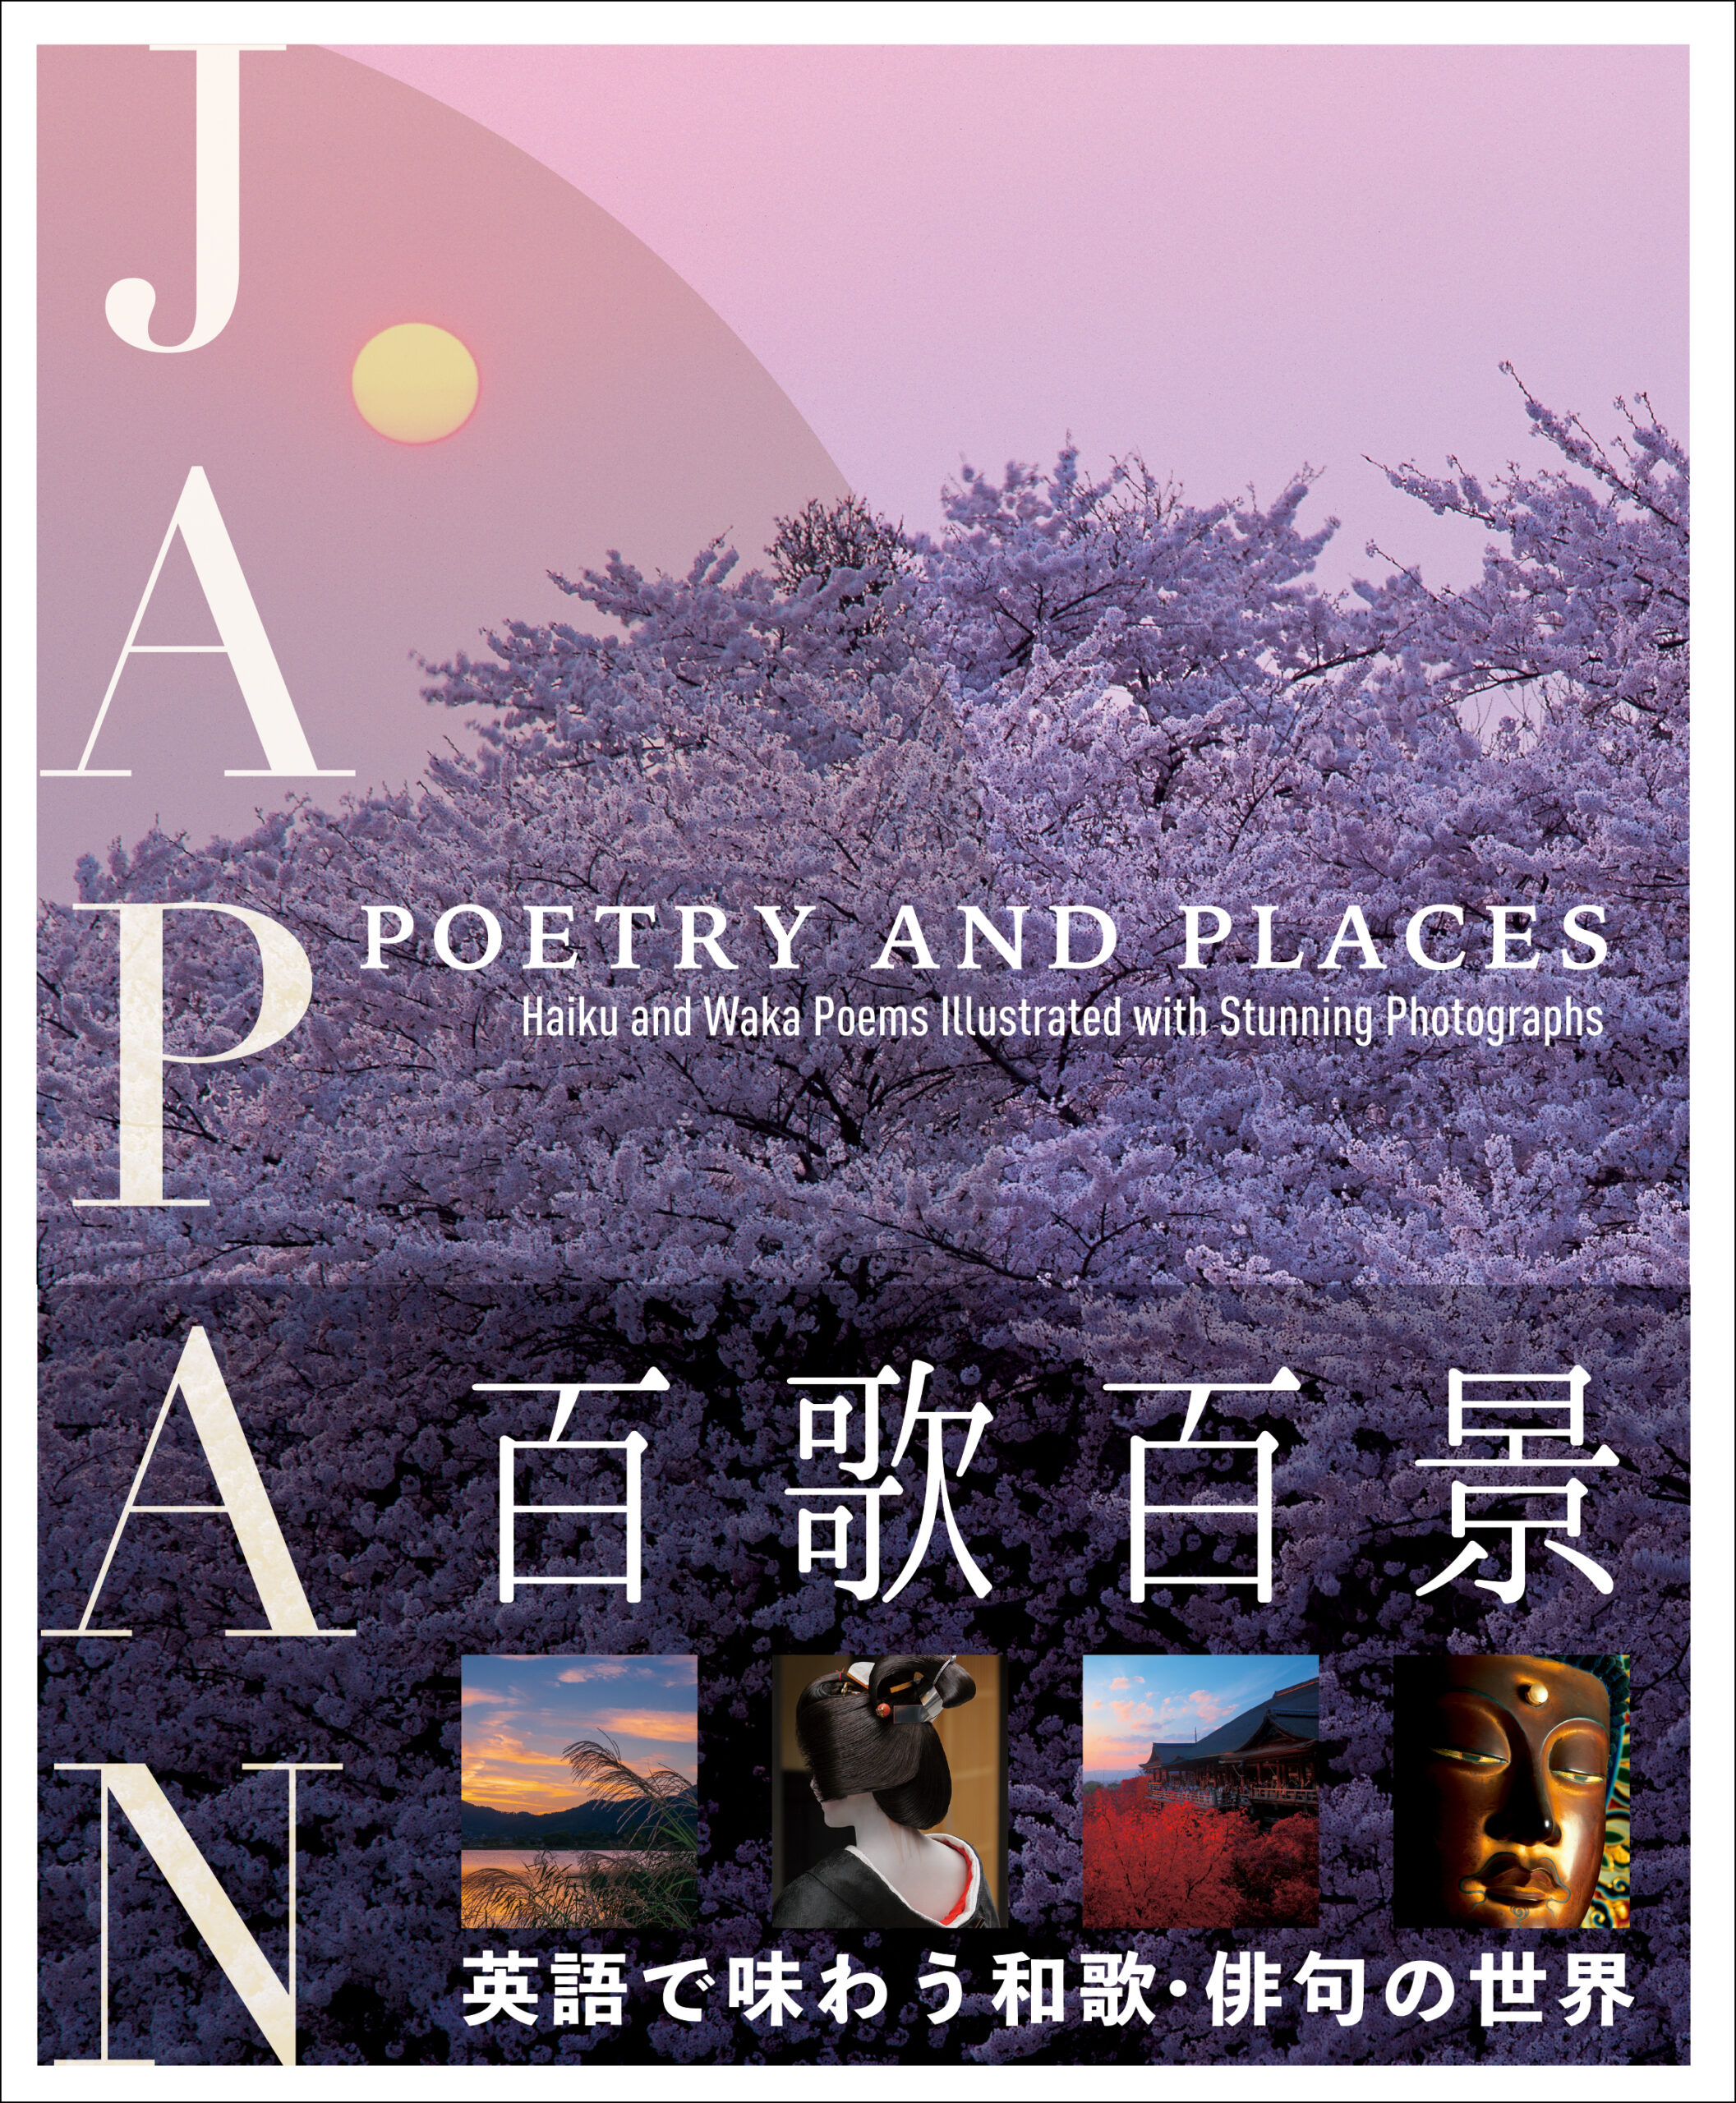 『百歌百景 JAPAN: POETRY AND PLACES』水野克比古、竹内敏信、山久瀬 洋二 (著)